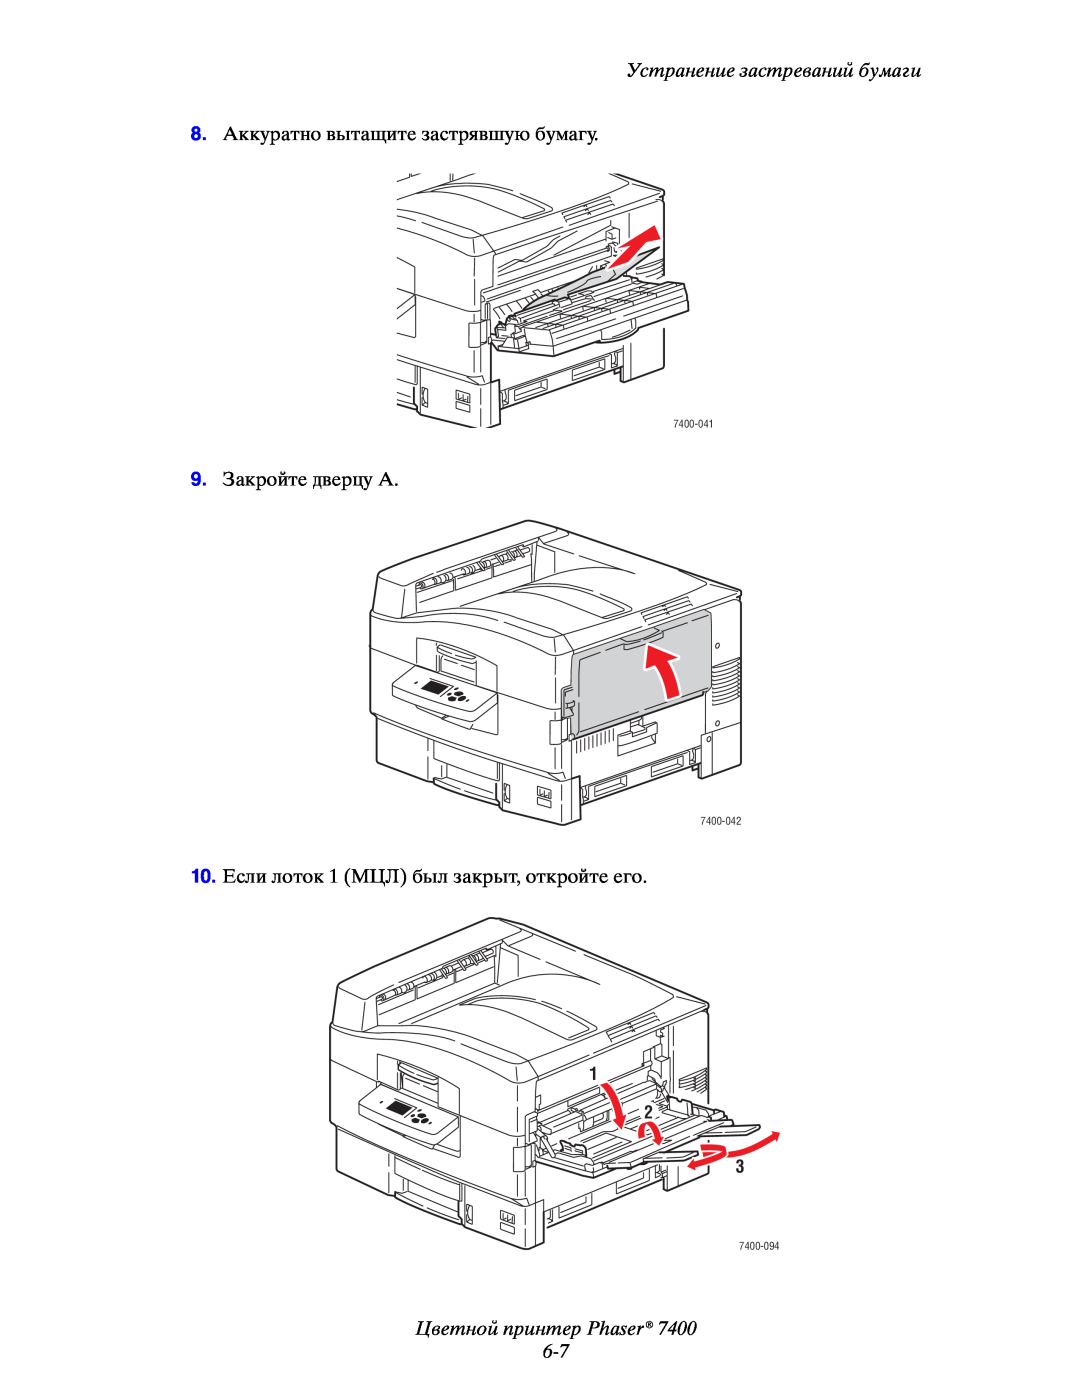 Xerox manual Цветной принтер Phaser 6-7, Устранение застреваний бумаги, 1 2 3, 7400-041, 7400-042, 7400-094 